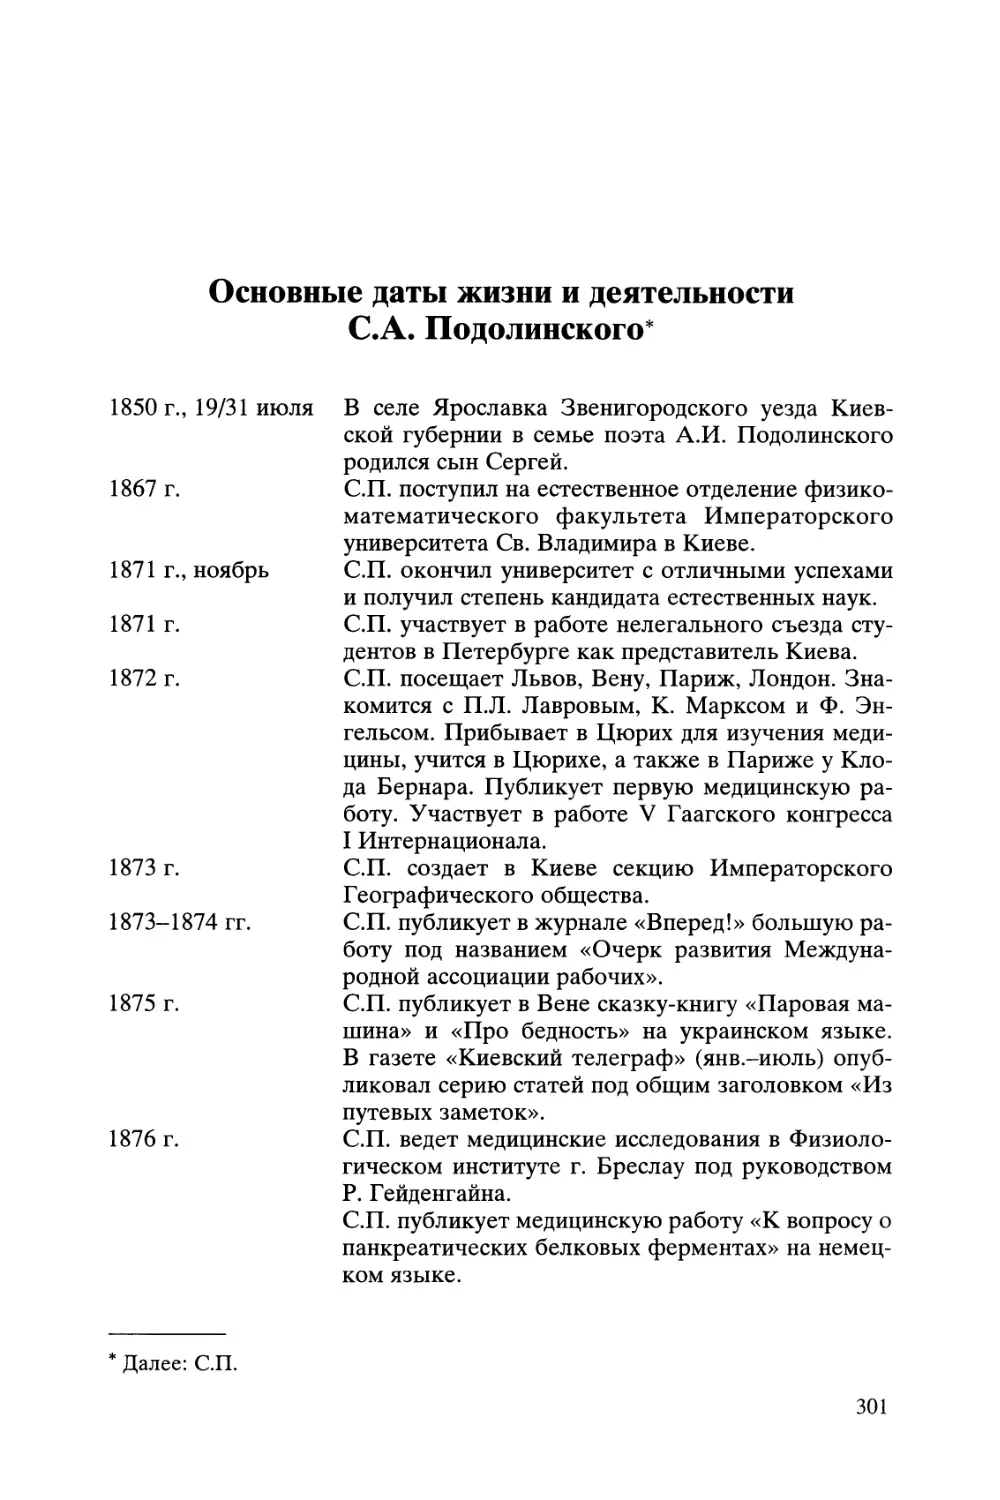 Основные даты жизни и деятельности С.А. Подолинского